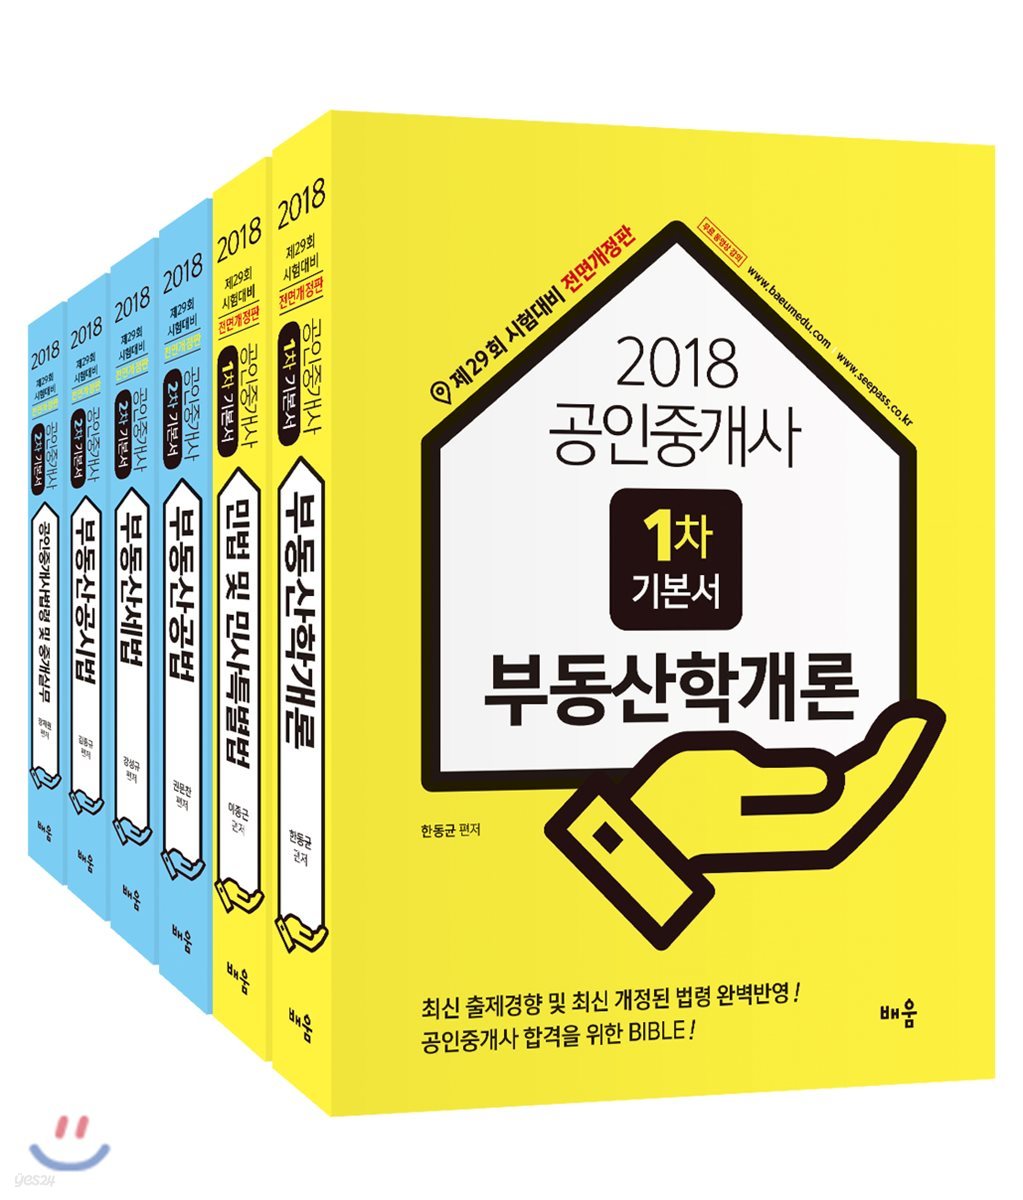 2018 배움 공인중개사 1,2차 기본서 세트